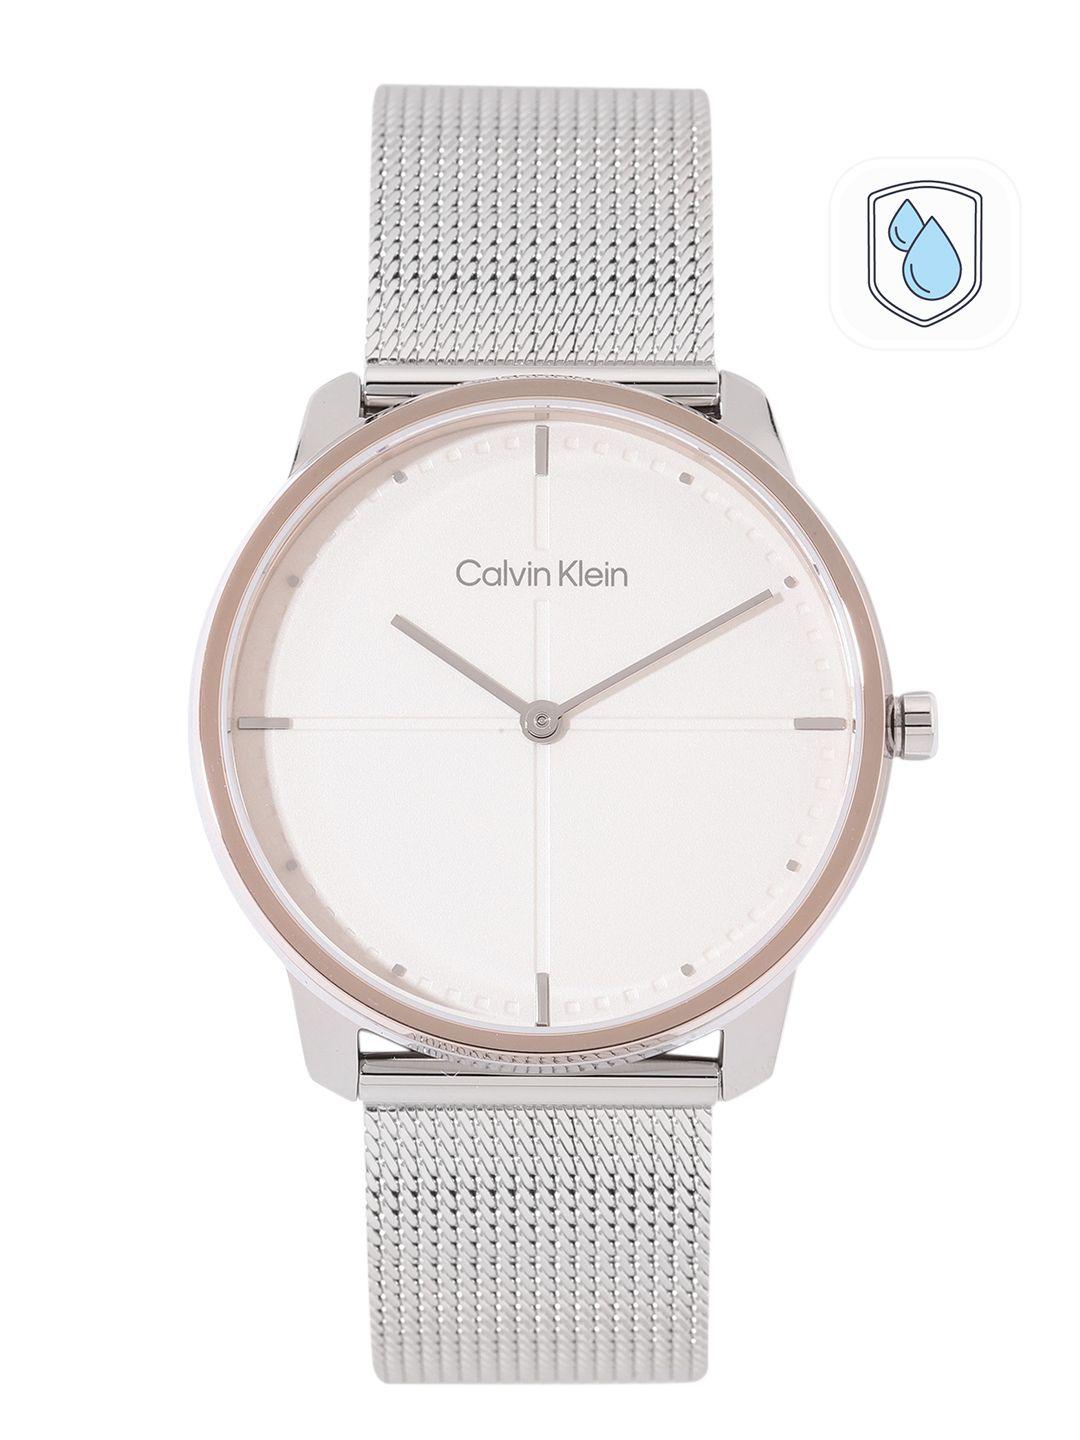 calvin klein unisex ck iconic analogue watch 25200157